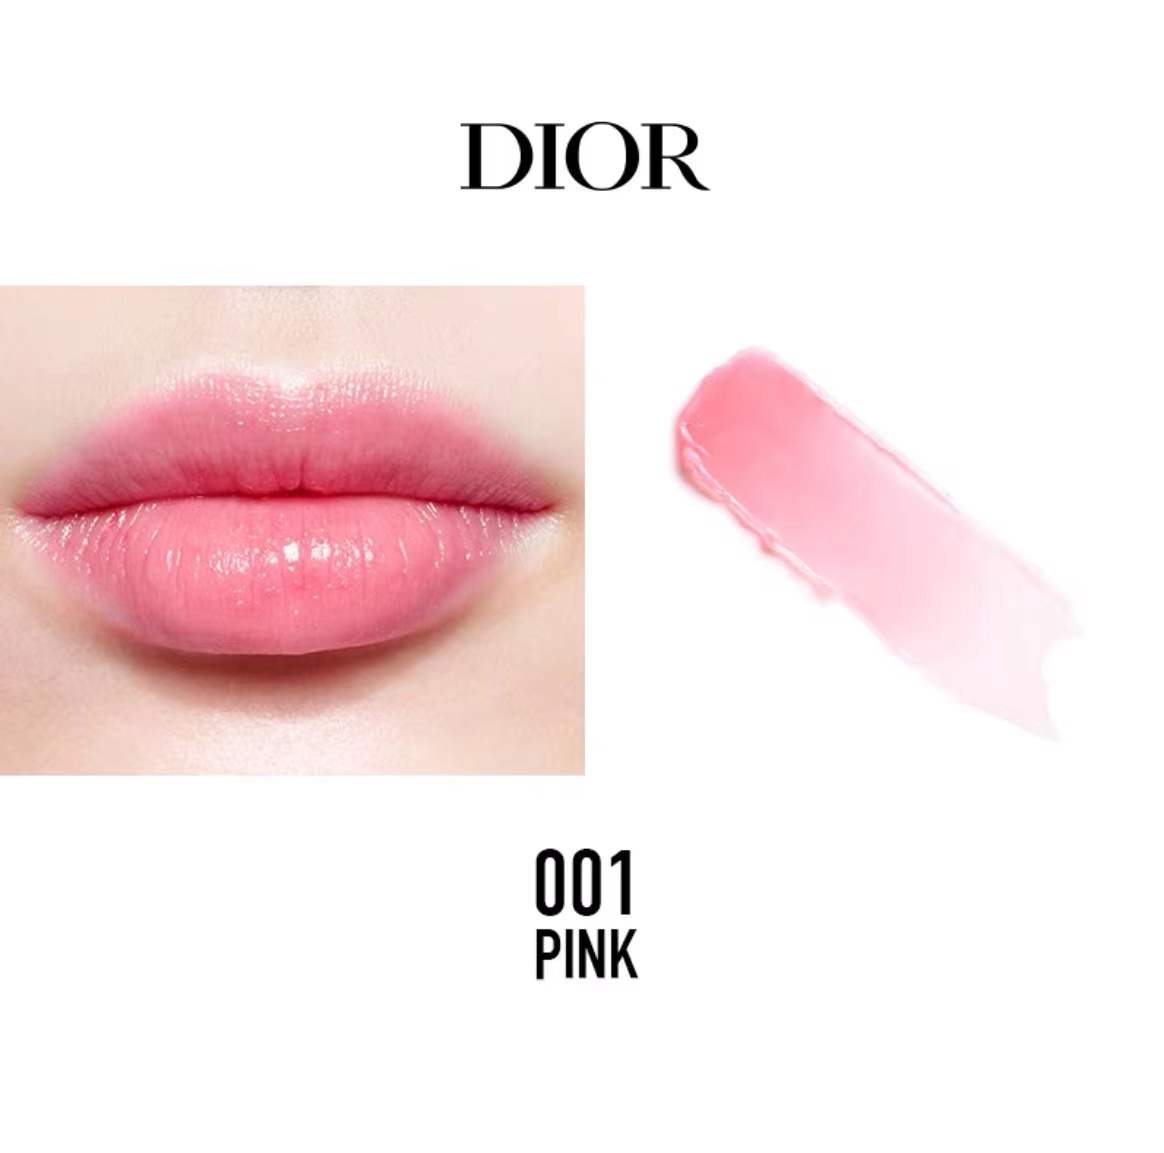 #Amelie Mall ลิปบาล์ม Dior Addict lip glow 3.2g บำรุงริมฝีปาก ให้ความชุ่มชื้น สี 001 pink และ 004 Coral ใช้แล้วสดใส ร่าเริง ⭐พร้อมส่ง⭐  ชื่อสี PINK001